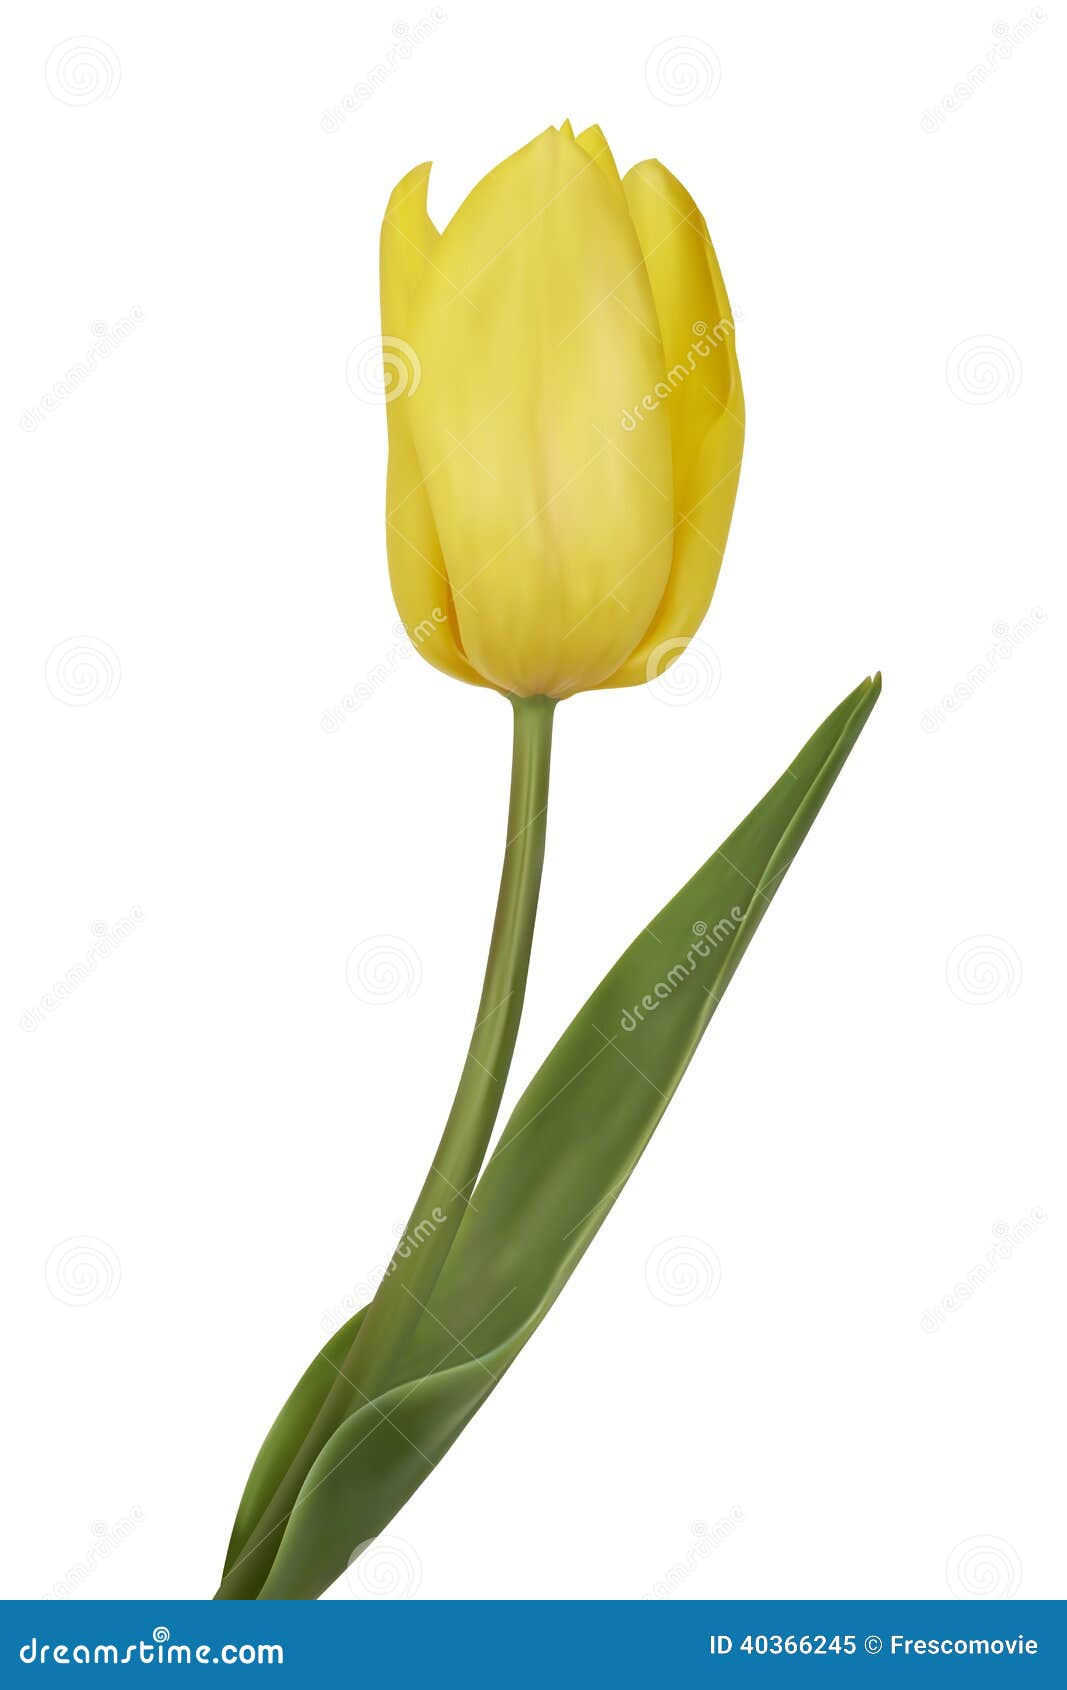  Yellow  Tulips  Stock Vector  Image 40366245